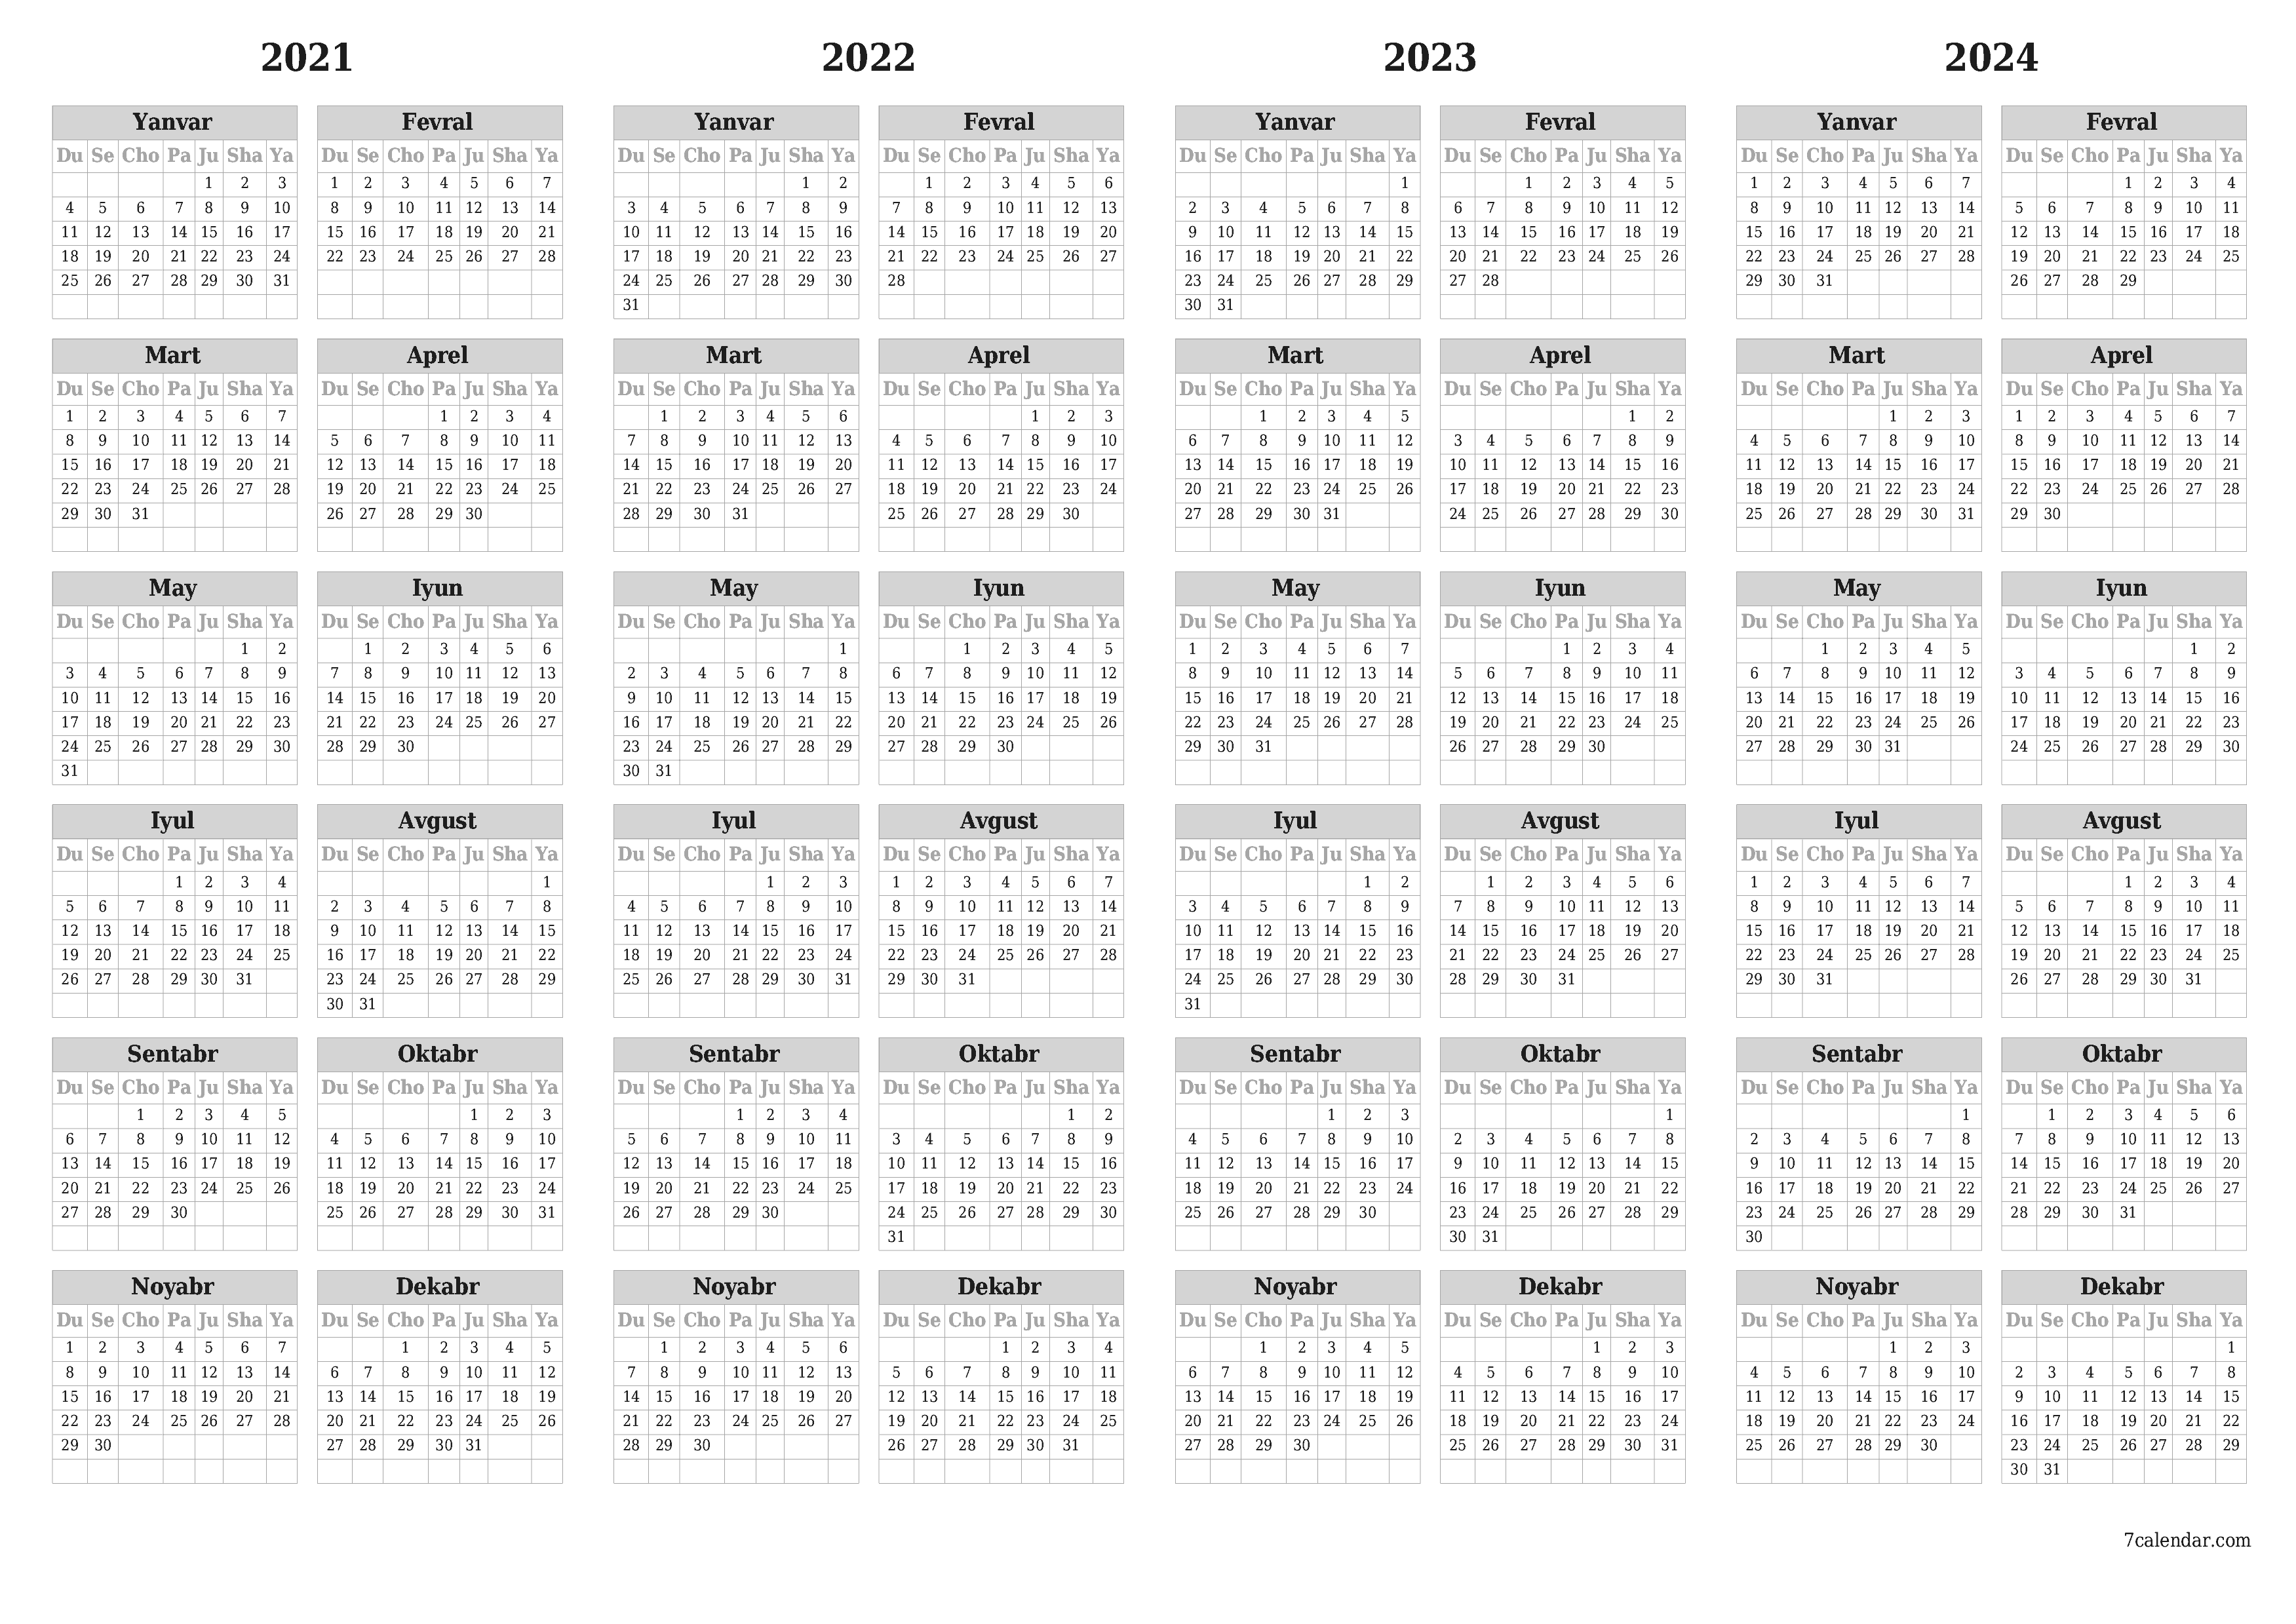 chop etiladigan devor taqvimi shabloni bepul gorizontal Yillik kalendar Fevral (Fev) 2021